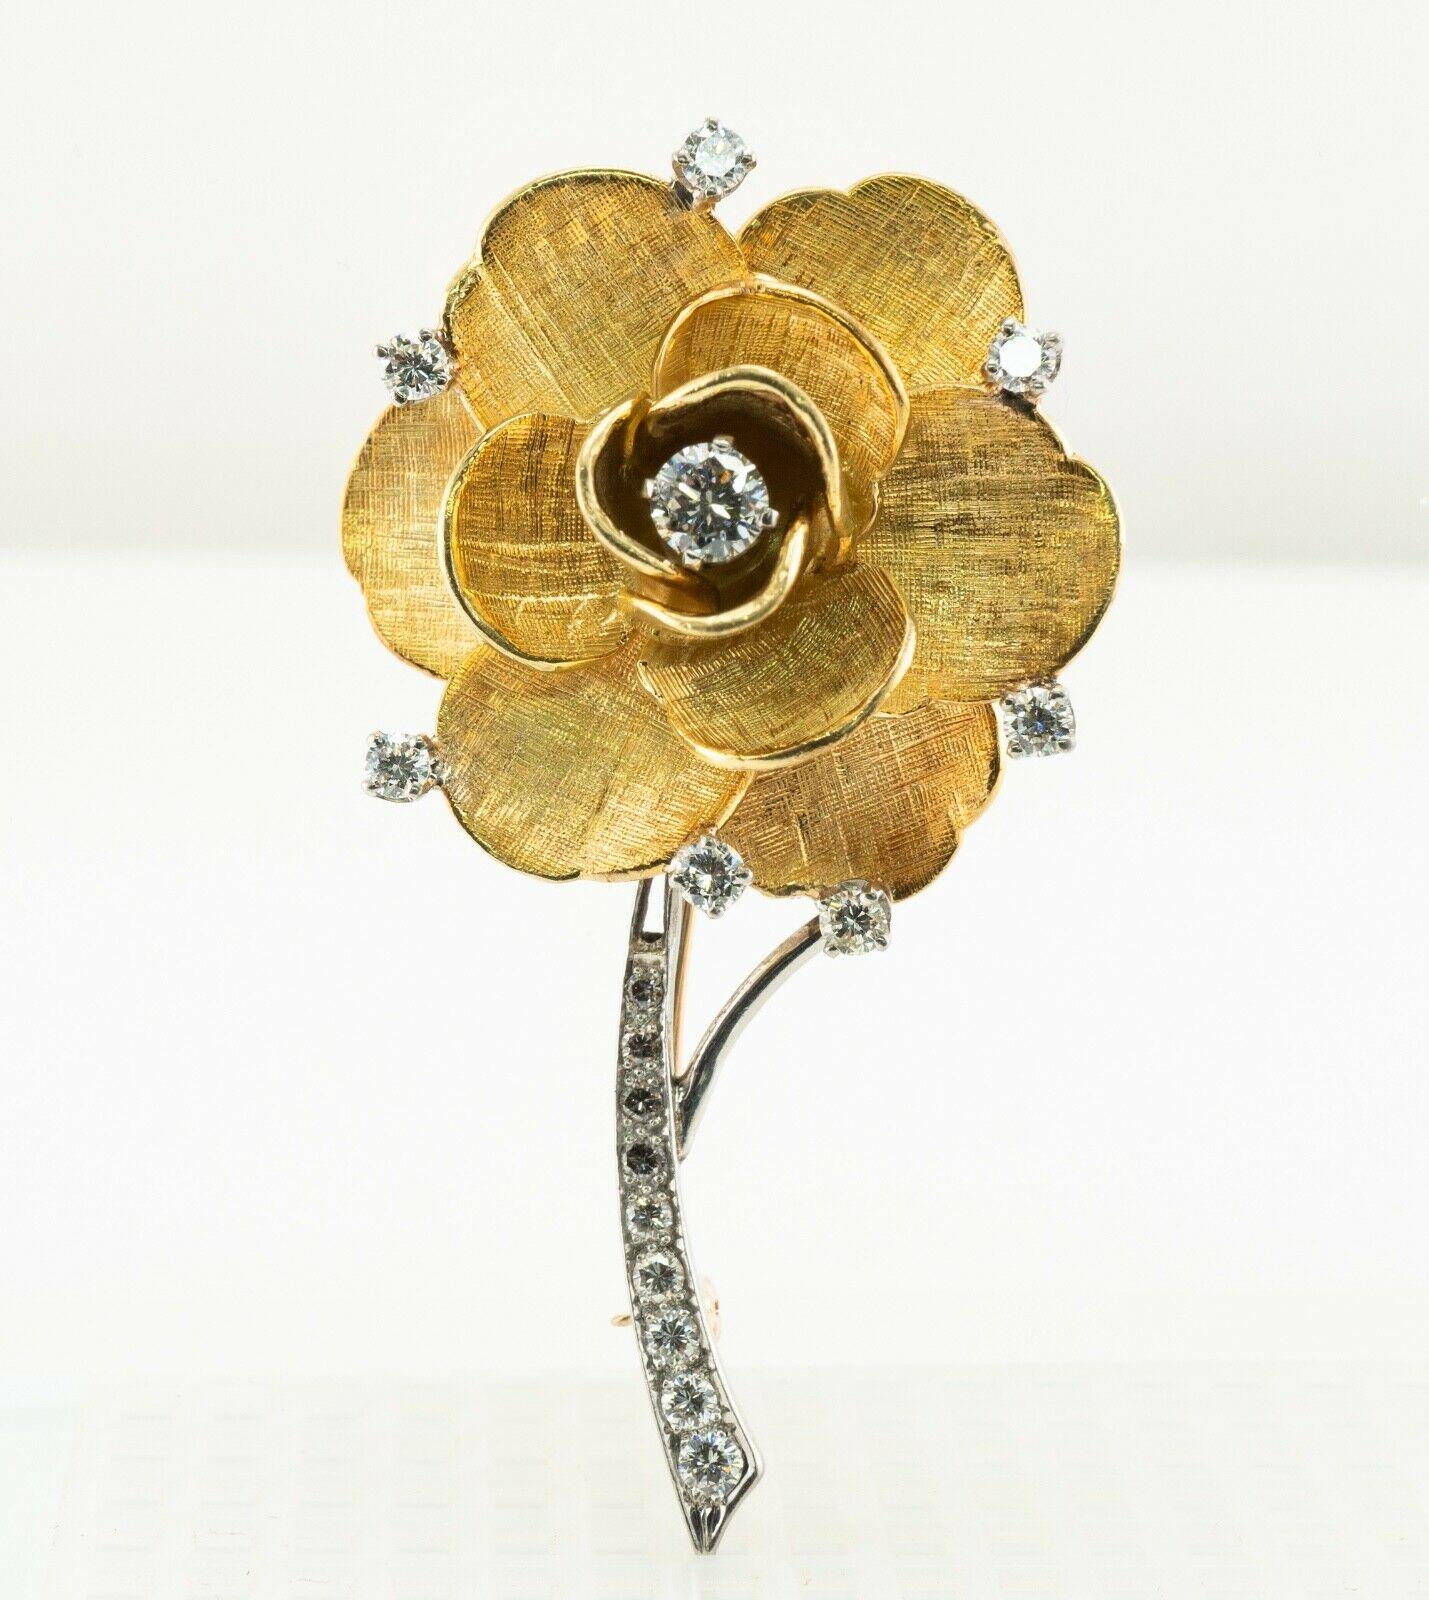 Diese authentische Tiffany & Co Brosche ist fein in massivem 18K Gelb- und Weißgold in der Form einer schönen Blume gefertigt. Selten und einzigartig, mit hohem Sammlerwert. Der runde Diamant im Brillantschliff hat ein Gewicht von 0,33 Karat. Sieben